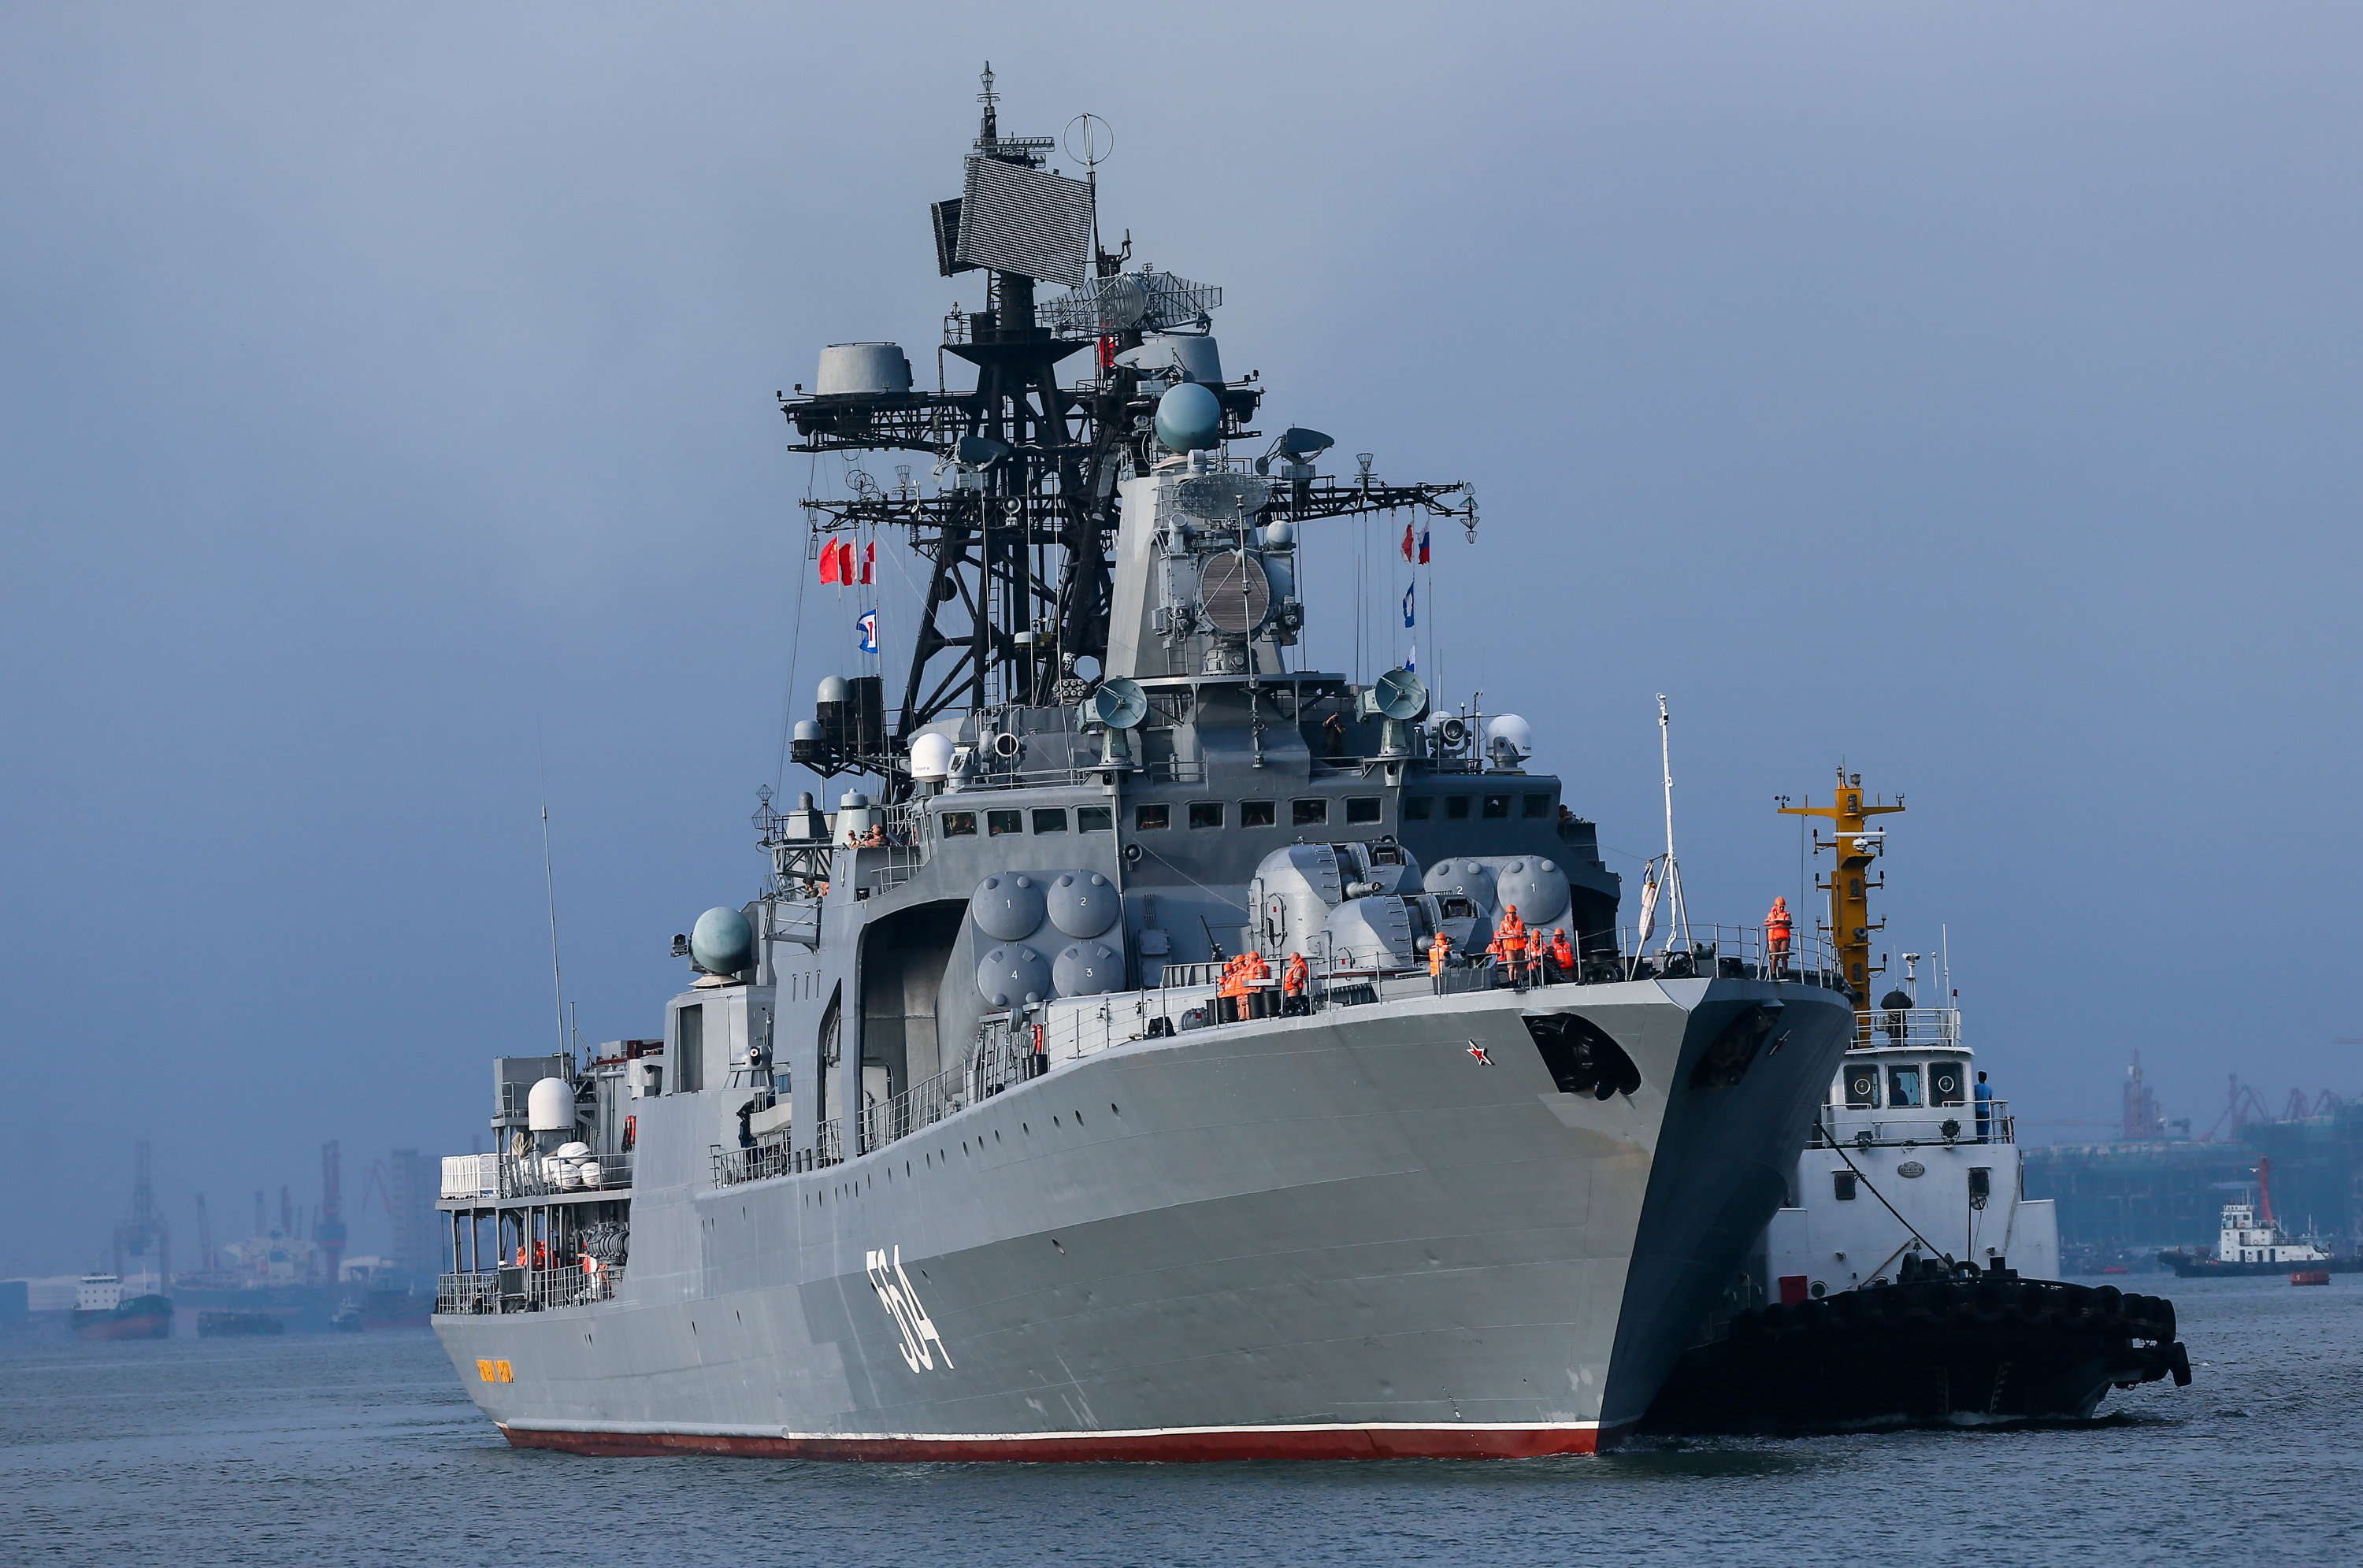 Ρωσικά πλοία στη Μαύρη Θάλασσα για τη διεξαγωγή ναυτικών ασκήσεων